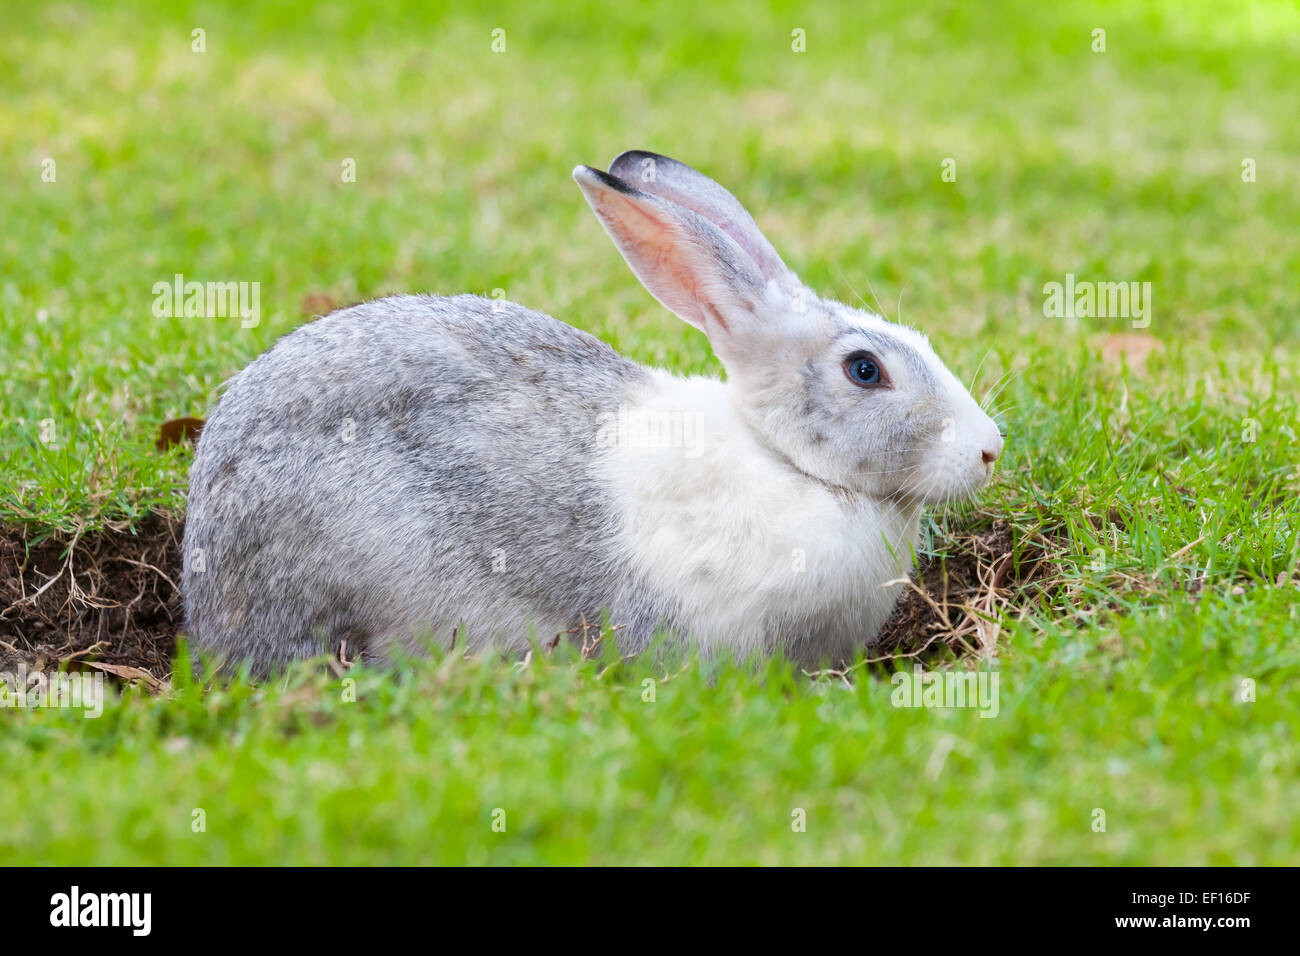 Graue und weiße Kaninchen gräbt ein Loch auf grünen Rasen Wiese Stockfoto